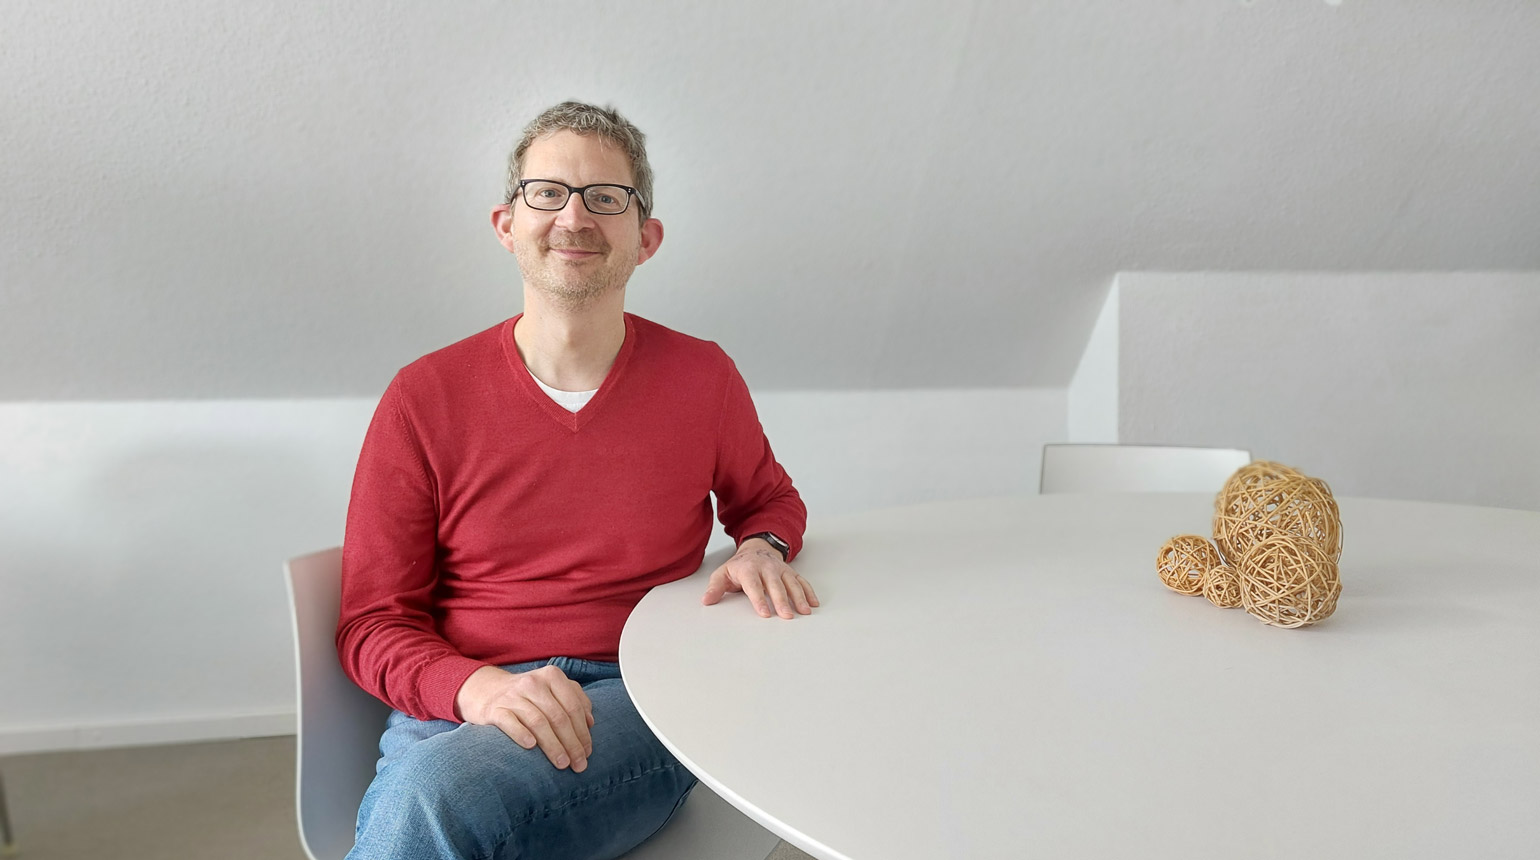 Foto: Dr. Tobias Skuban-Eiseler sitzt in Jeans und Pulli an einem Besprechungstisch. Er lächelt freundlich.